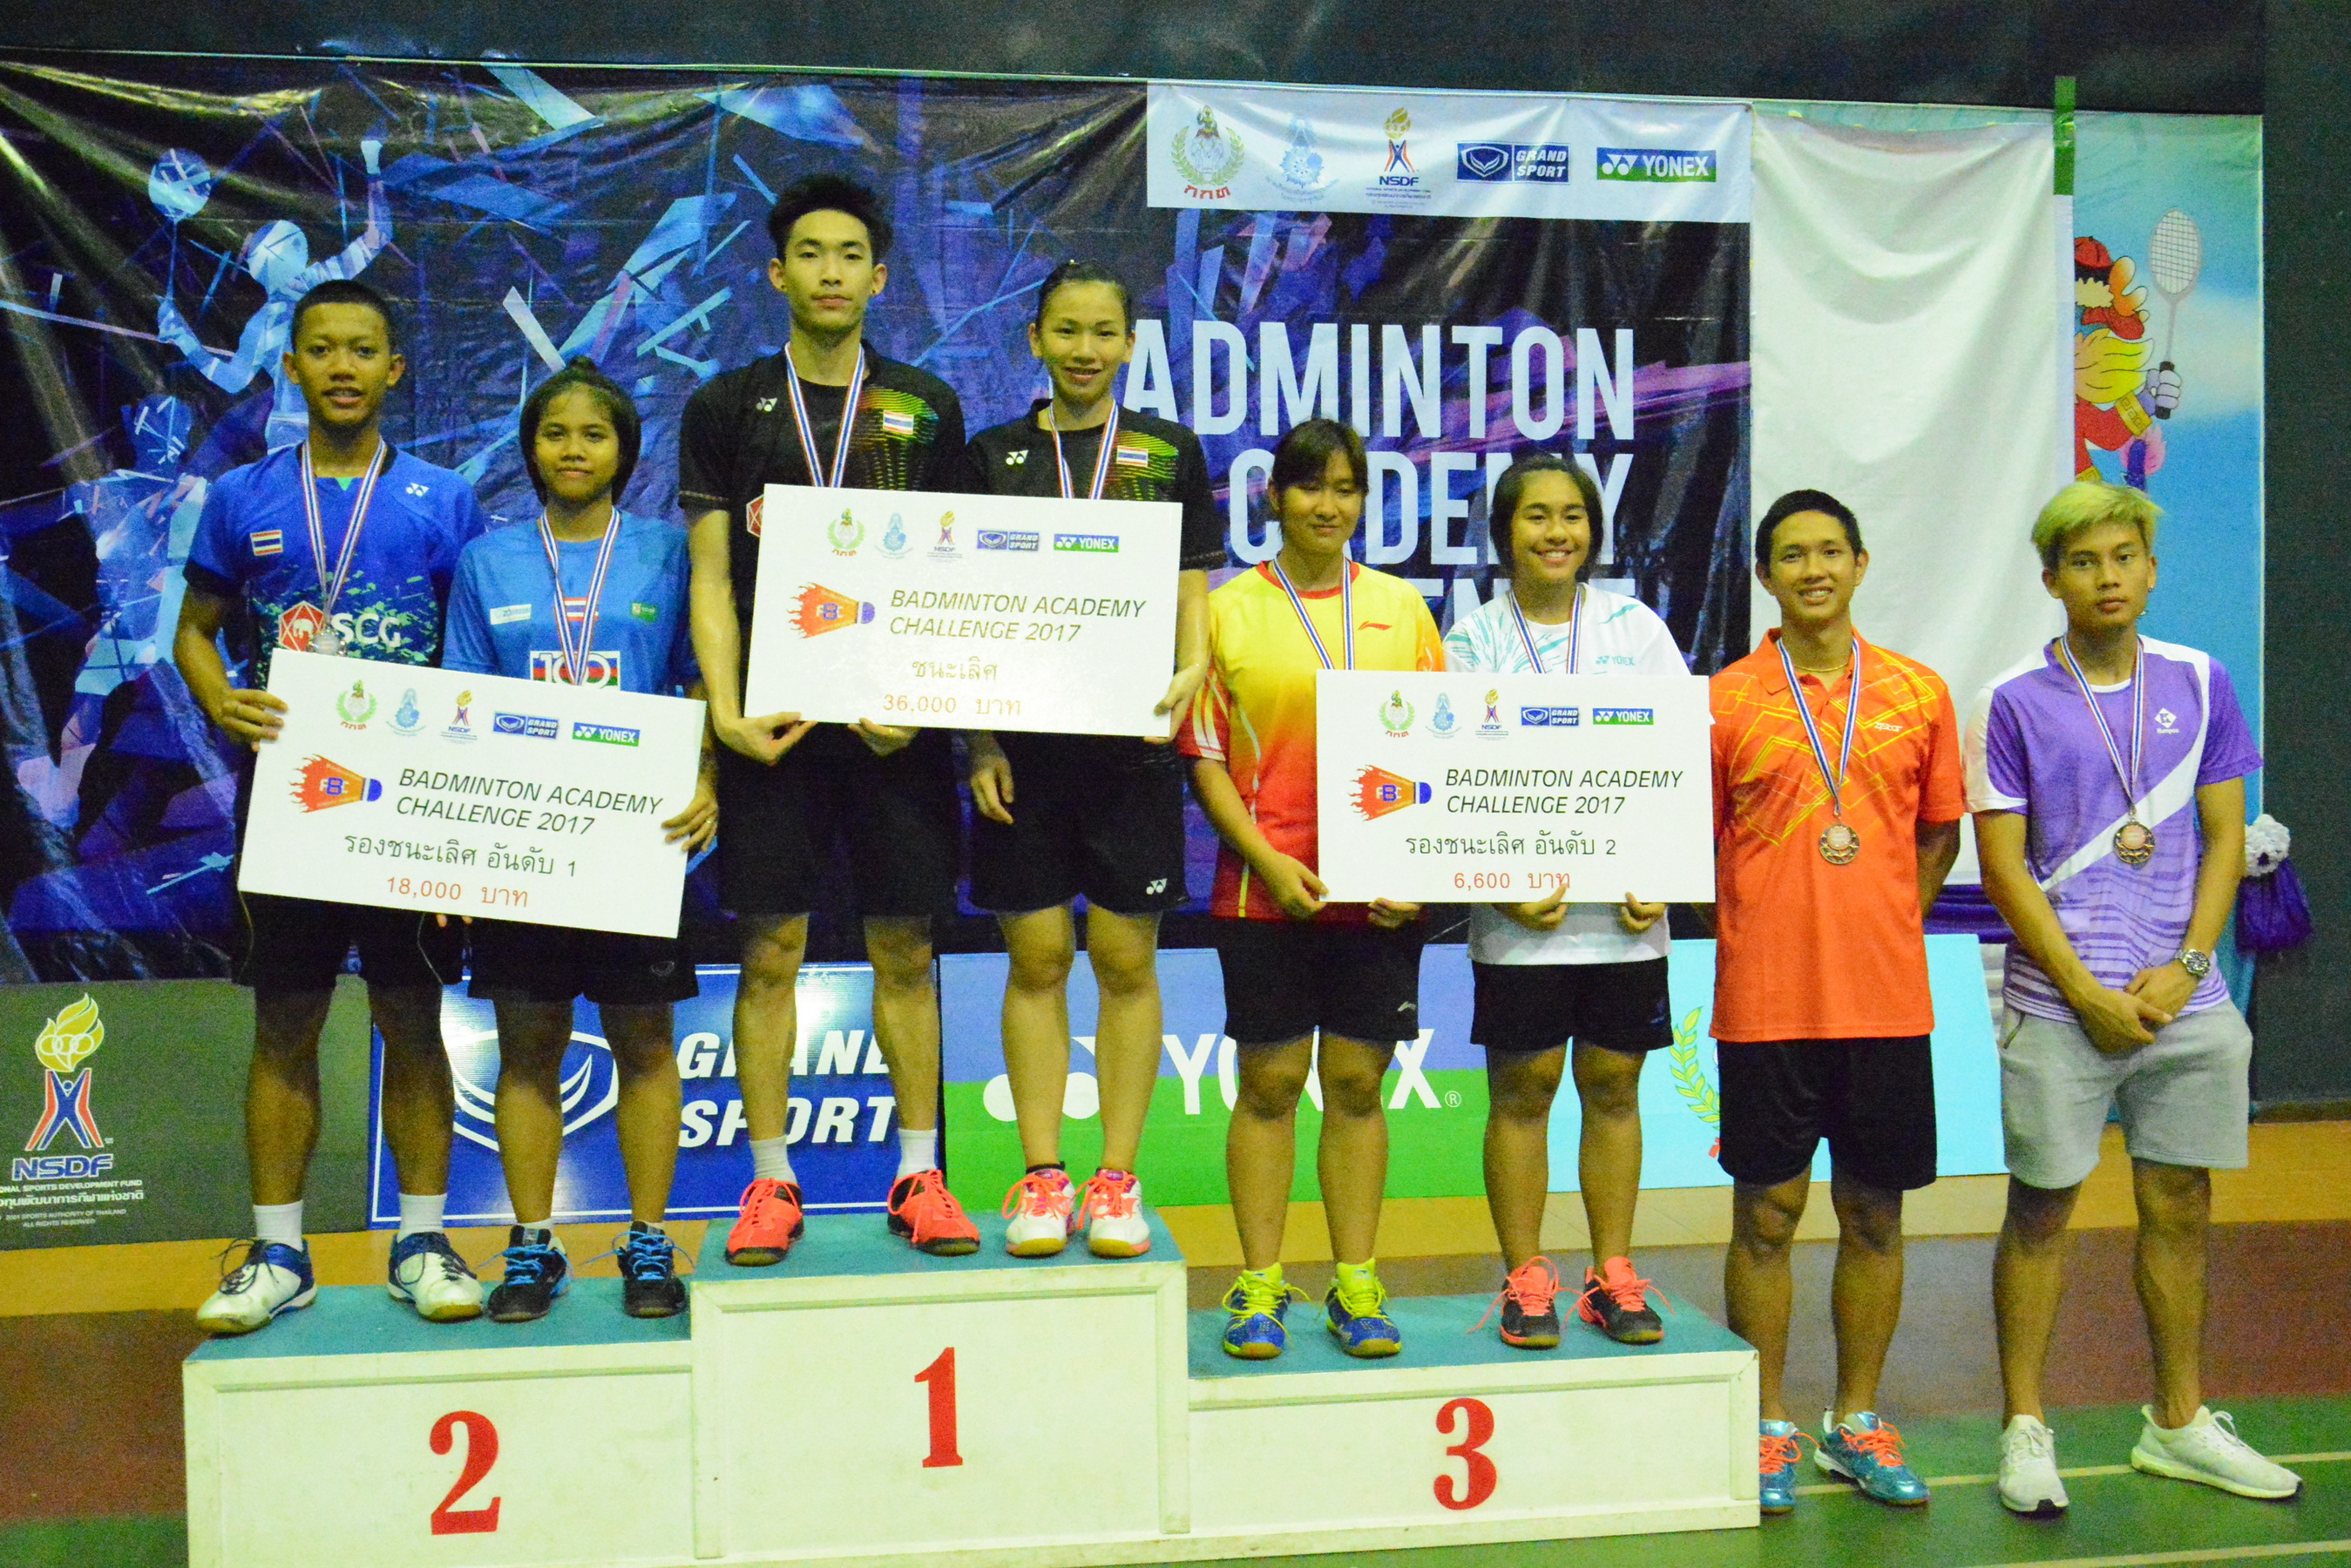 สรุปผล Badminton Academy Challenge สนามที่ 2 จังหวัดนครสวรรค์ รอบชิงชนะเลิศ